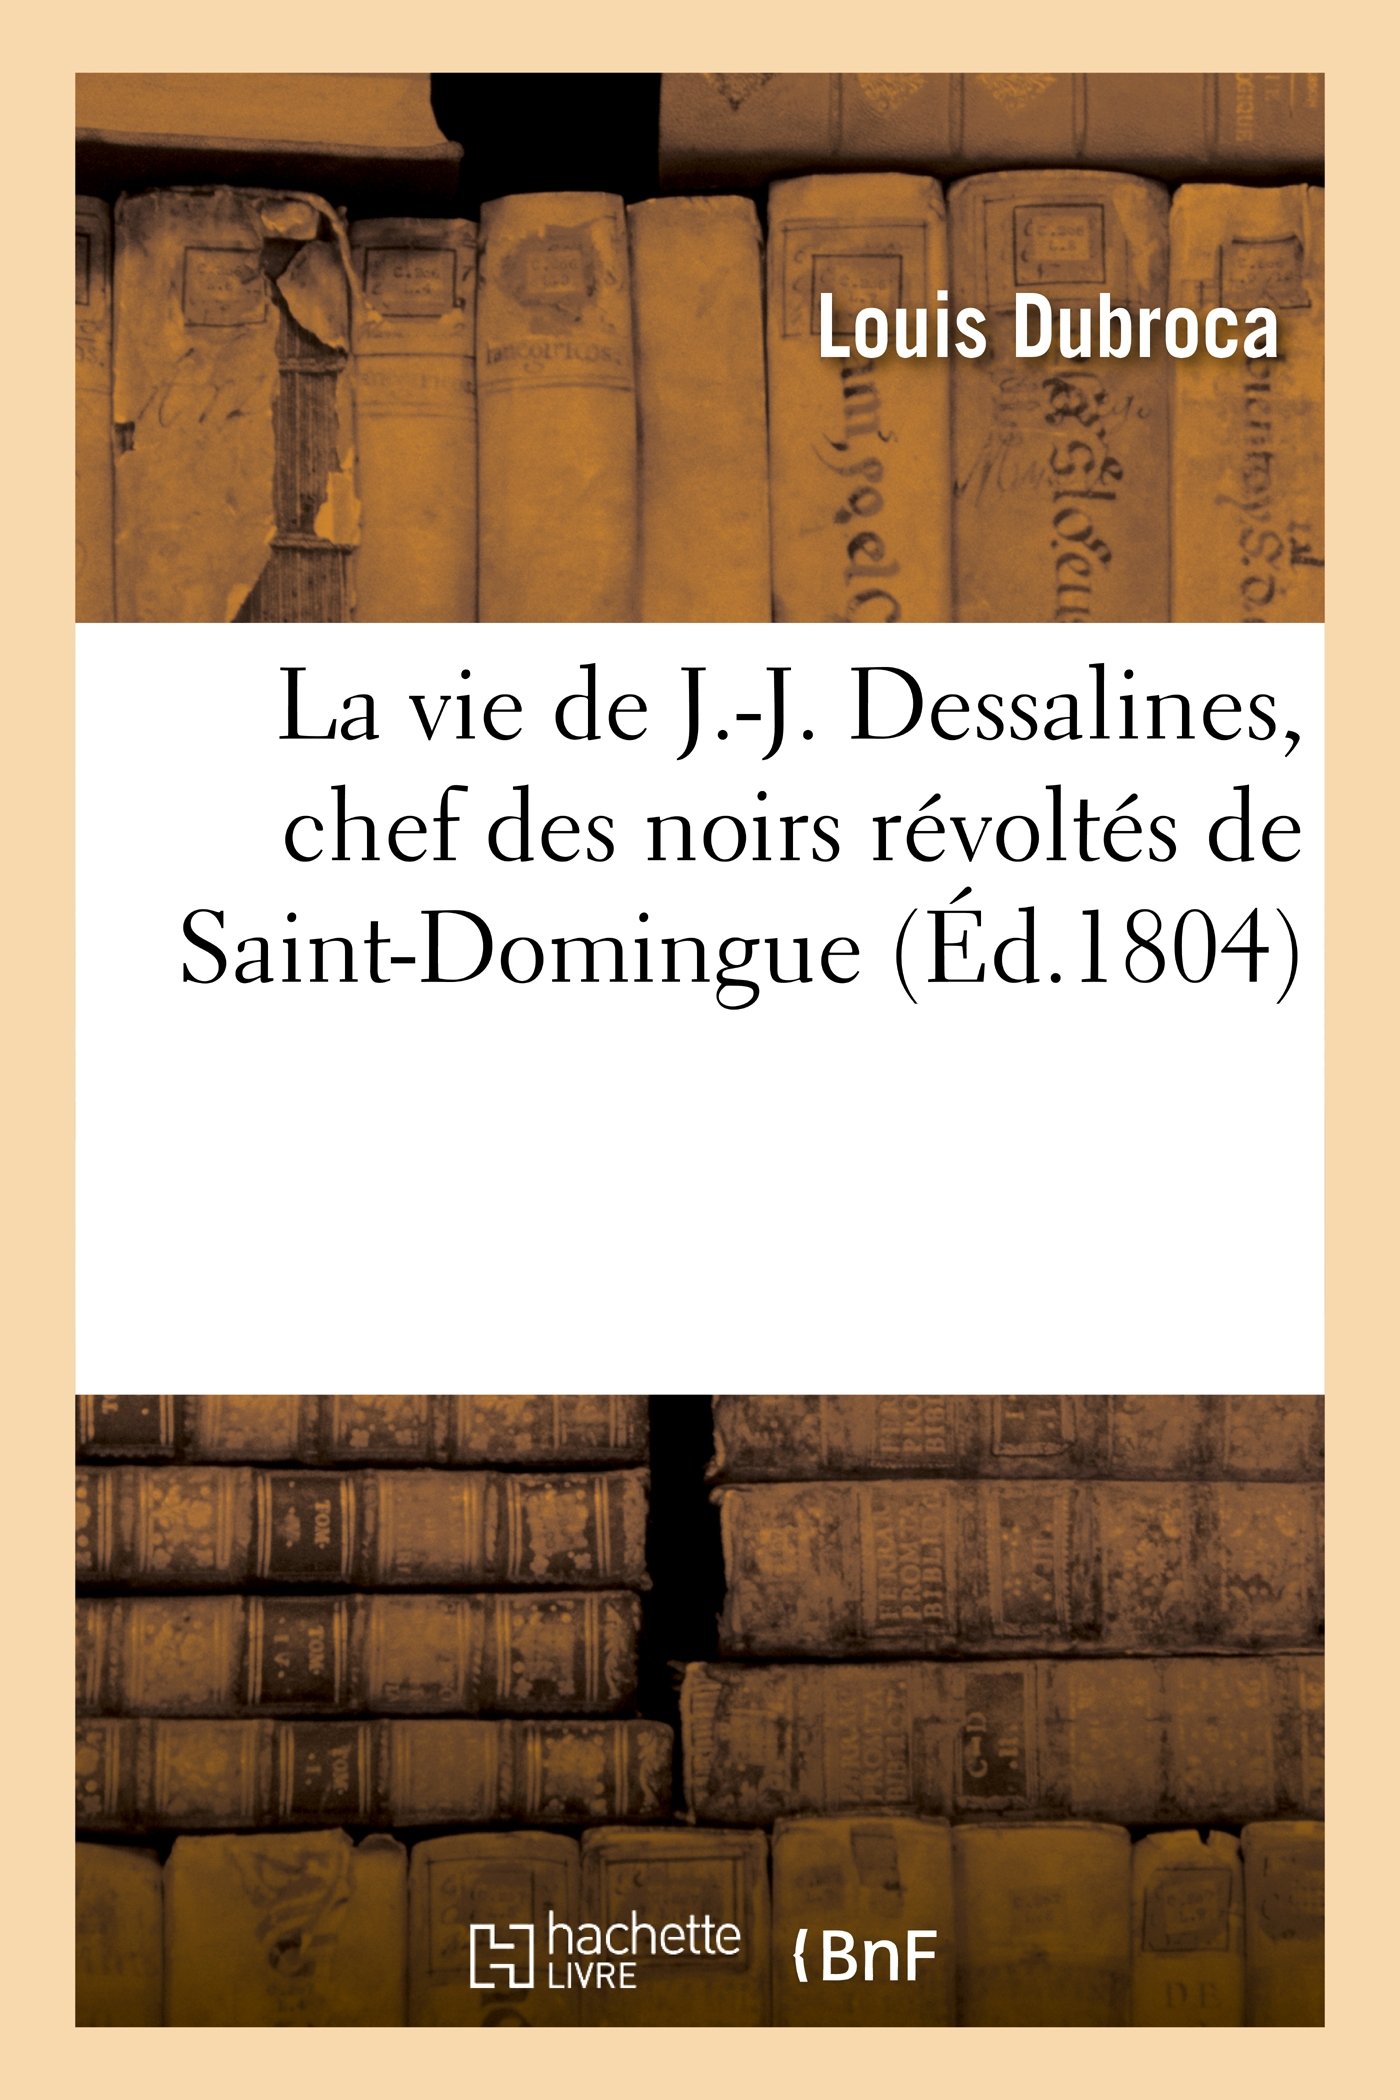 La vie de J.-J. Dessalines, chef des noirs révoltés de Saint-Domingue, avec des notes très (Histoire) (French Edition)